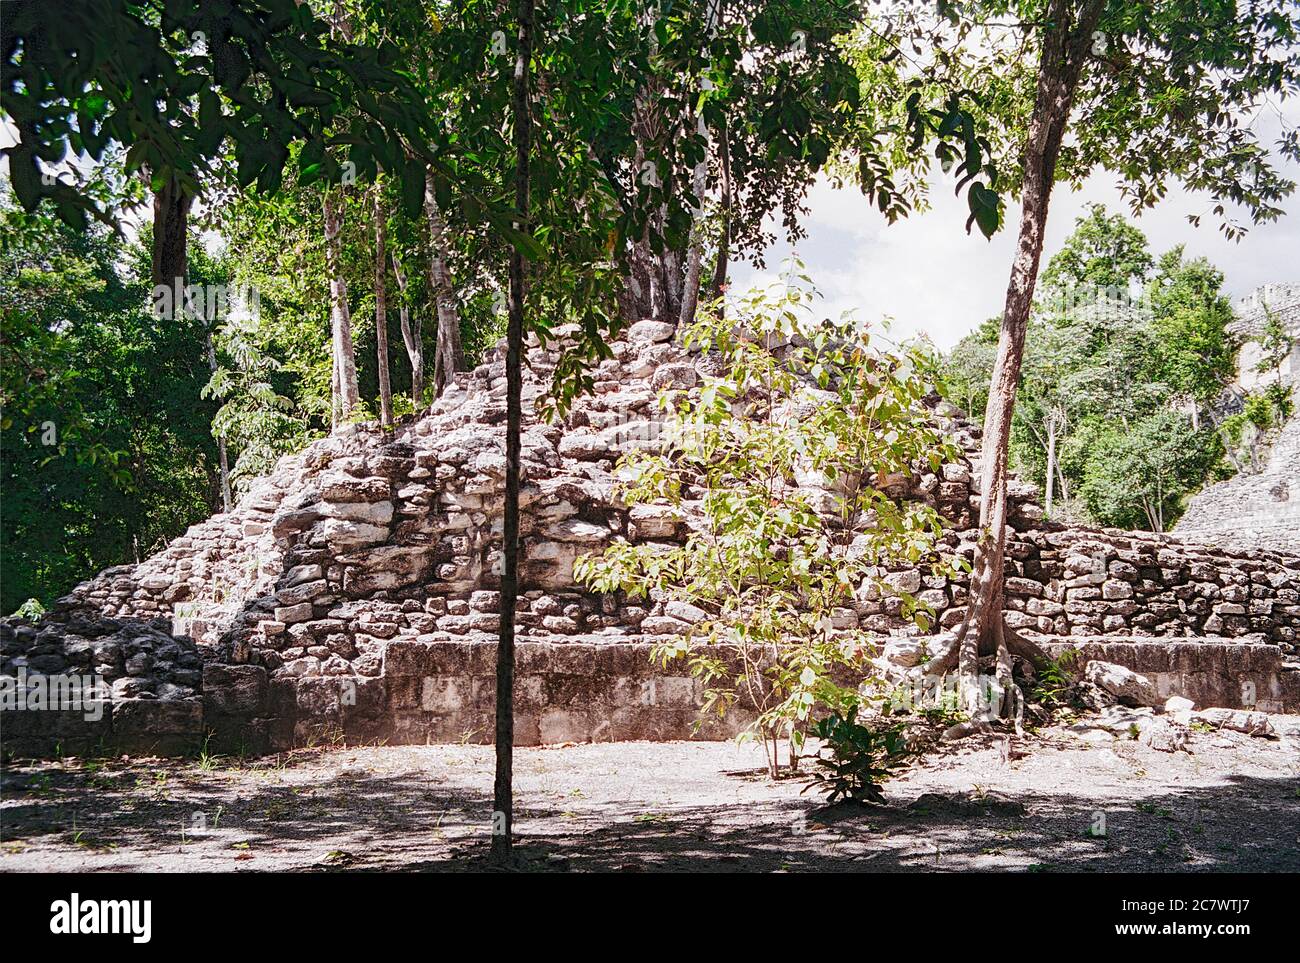 Archäologische Stätte von BECAN Maya. Ruinen einer alten Struktur mit Bäumen, die darauf wachsen. Struktur X im Hintergrund (links). Campeche, Mexiko. Vintage Film Bild - ca. 1990. Stockfoto